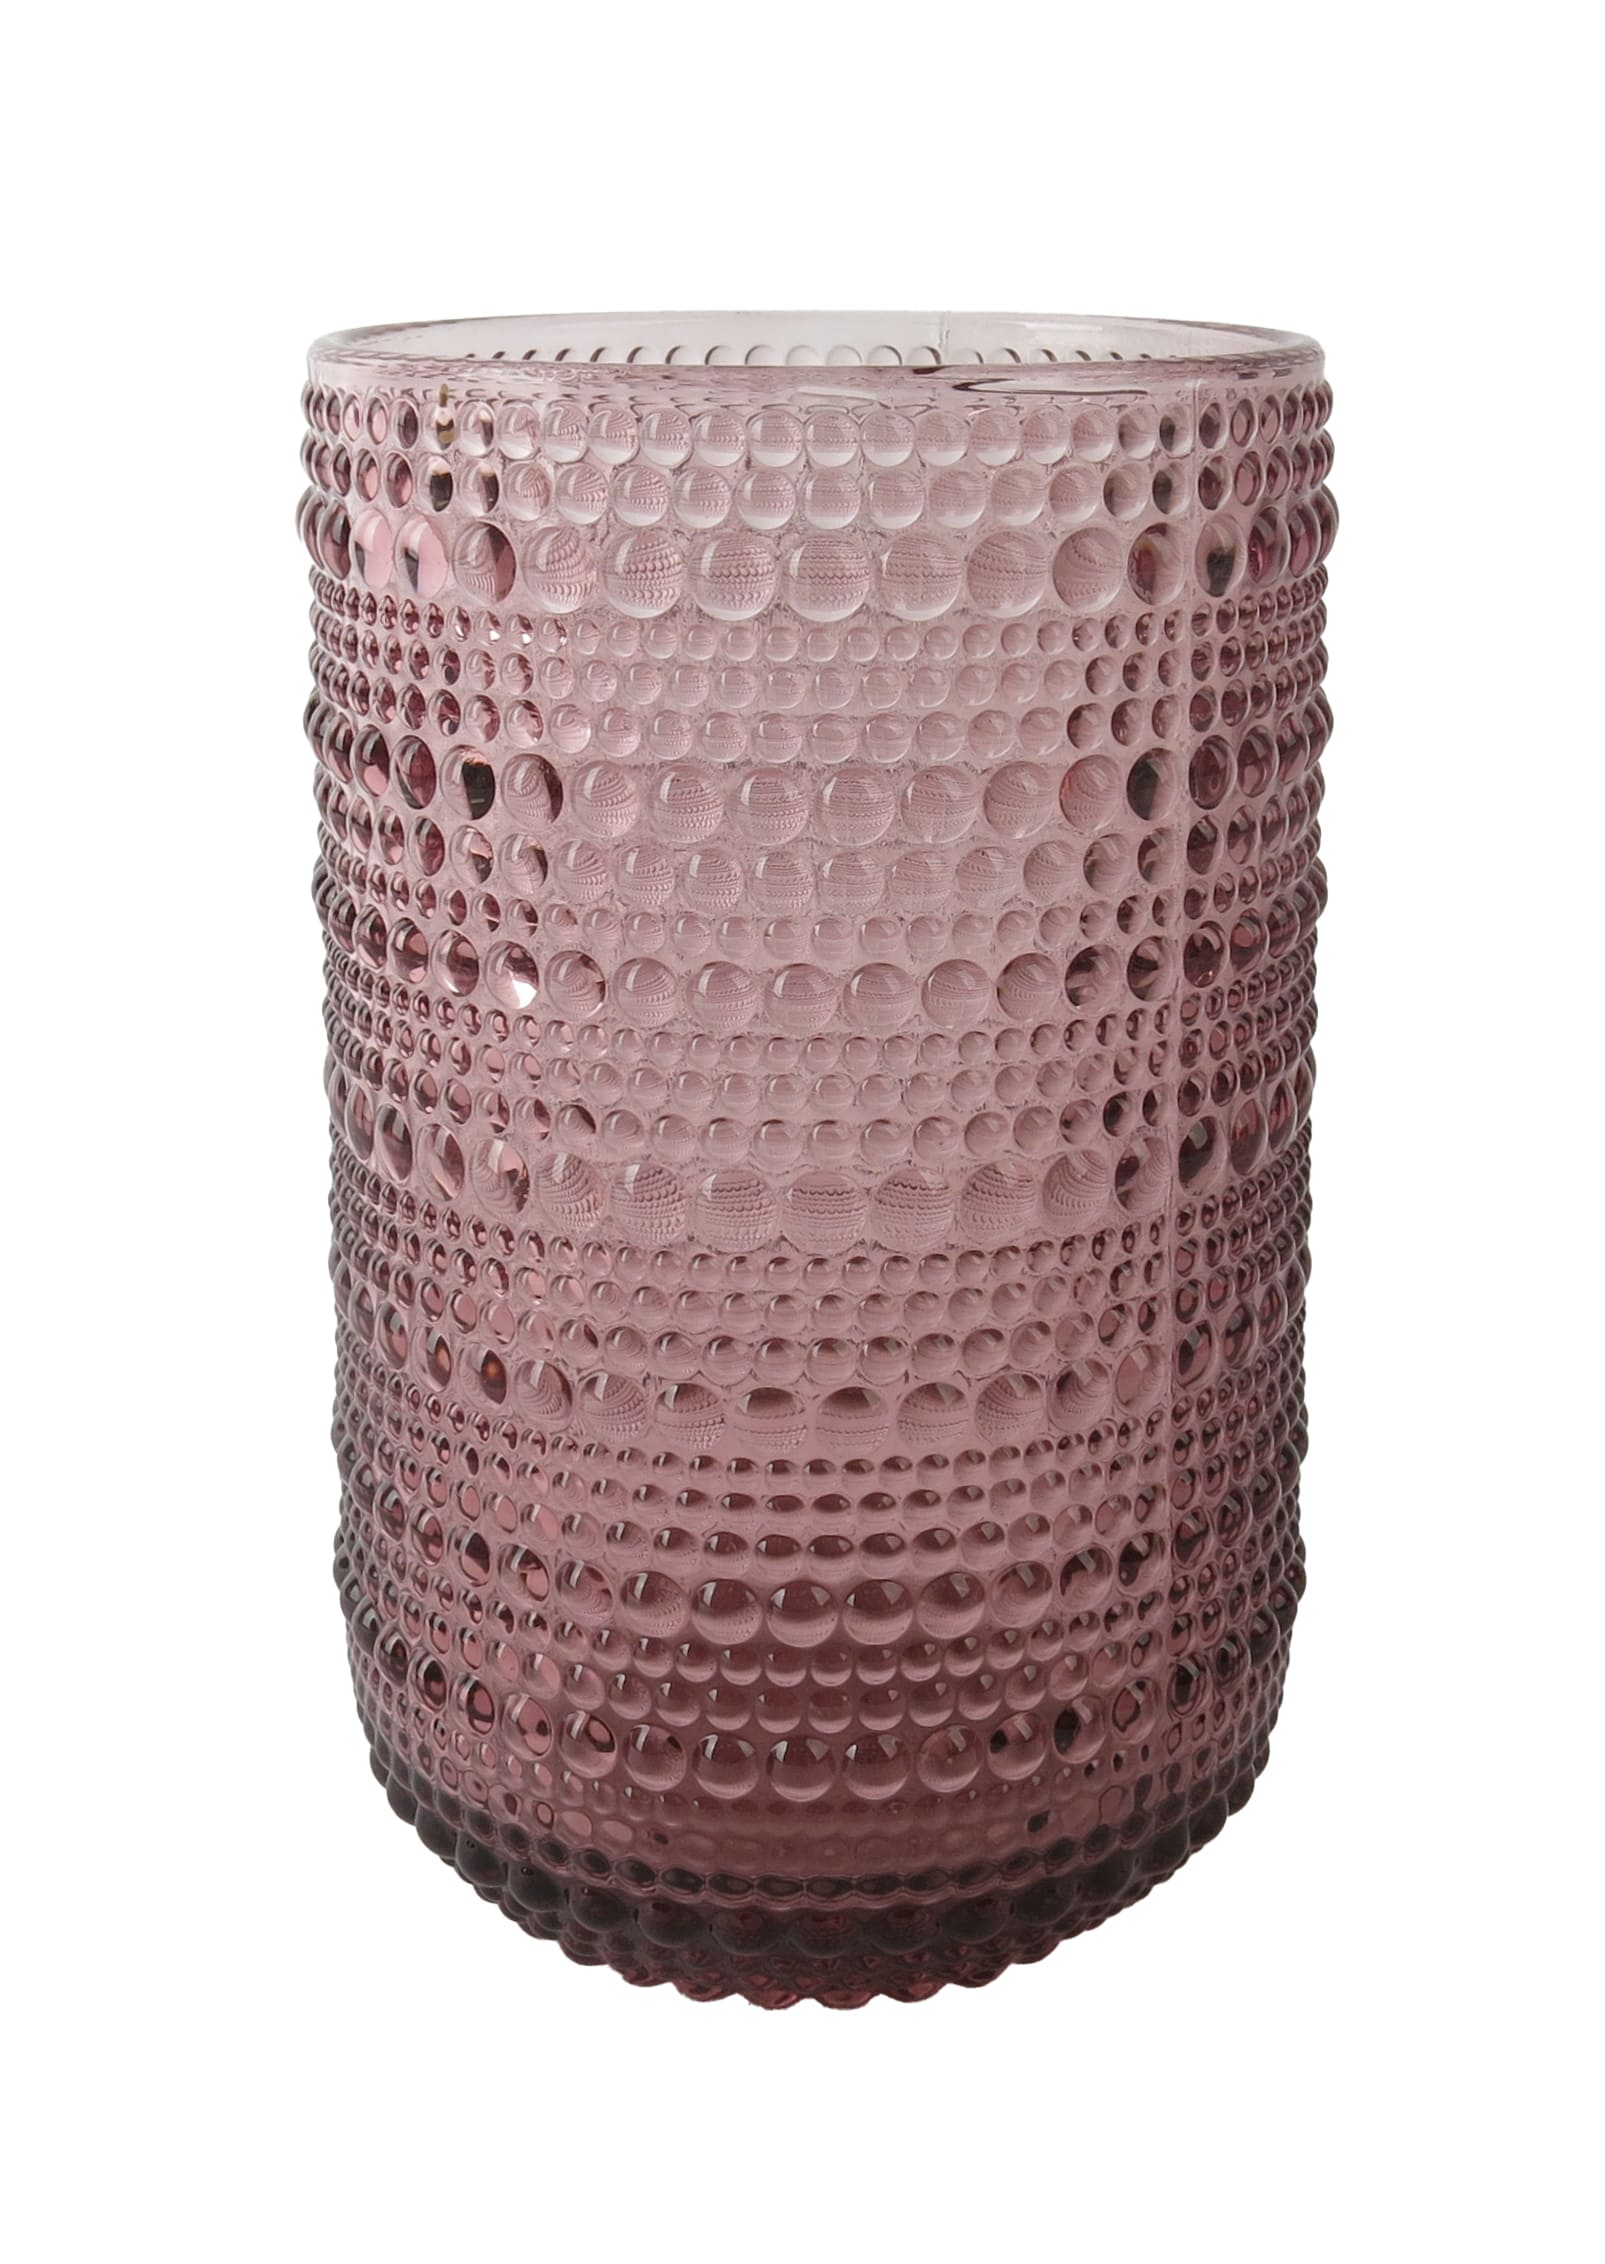 Votivlicht Glas lila mit Punktstruktur 7,7x7,7x12,8cm